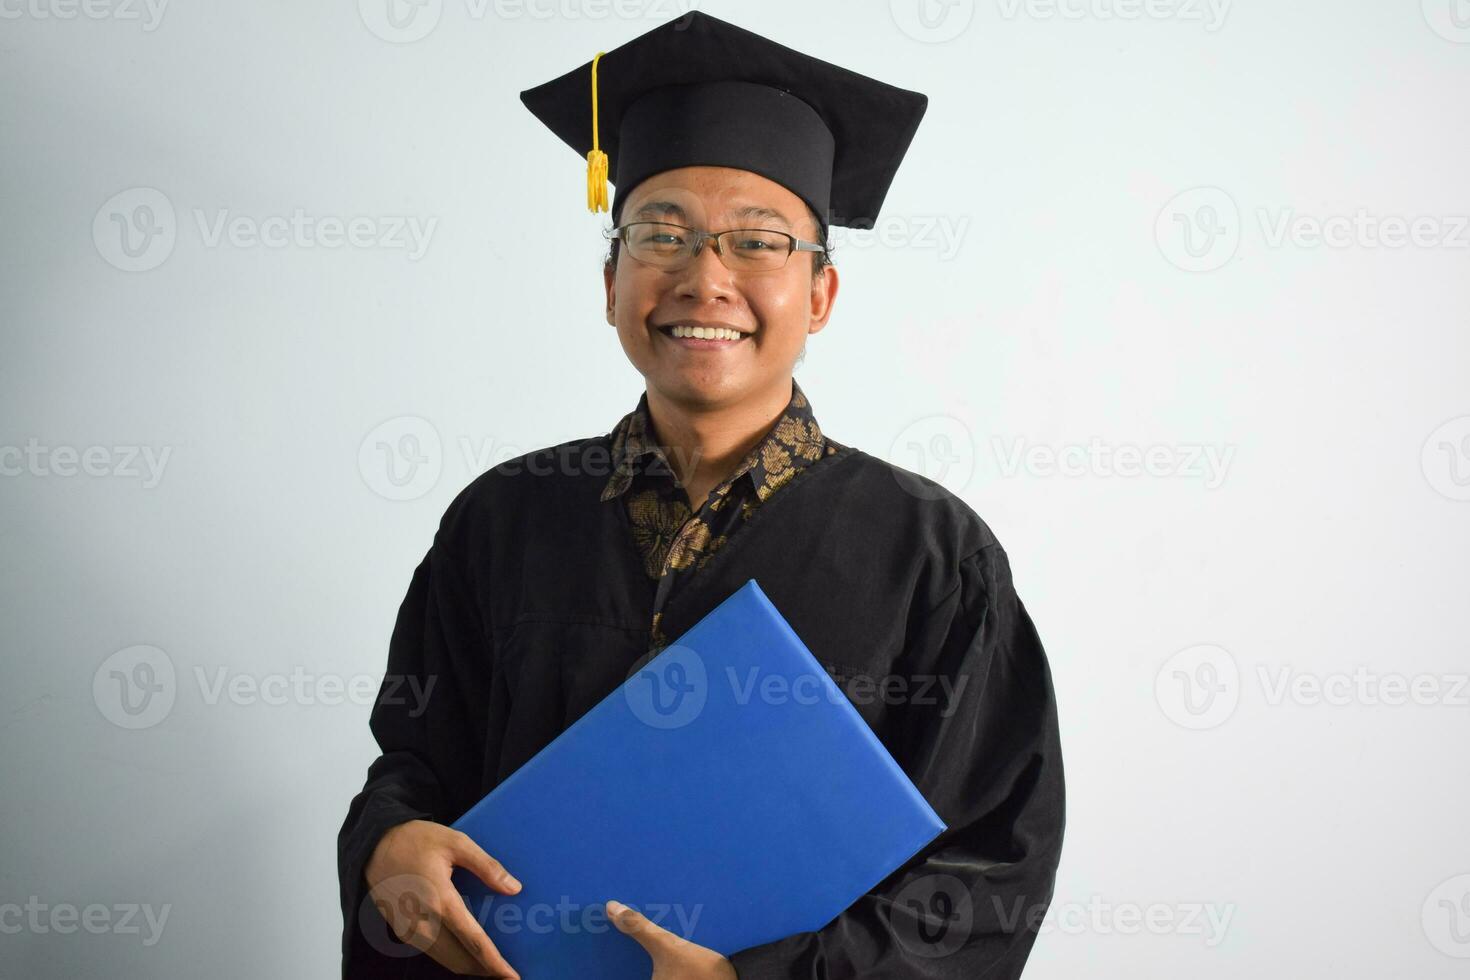 uttrycksfull av vuxen indonesien manlig ha på sig gradering morgonrock, hatt och glasögon, asiatisk manlig gradering föra tom blå certifikat isolerat på vit bakgrund, uttryck av porträtt gradering foto